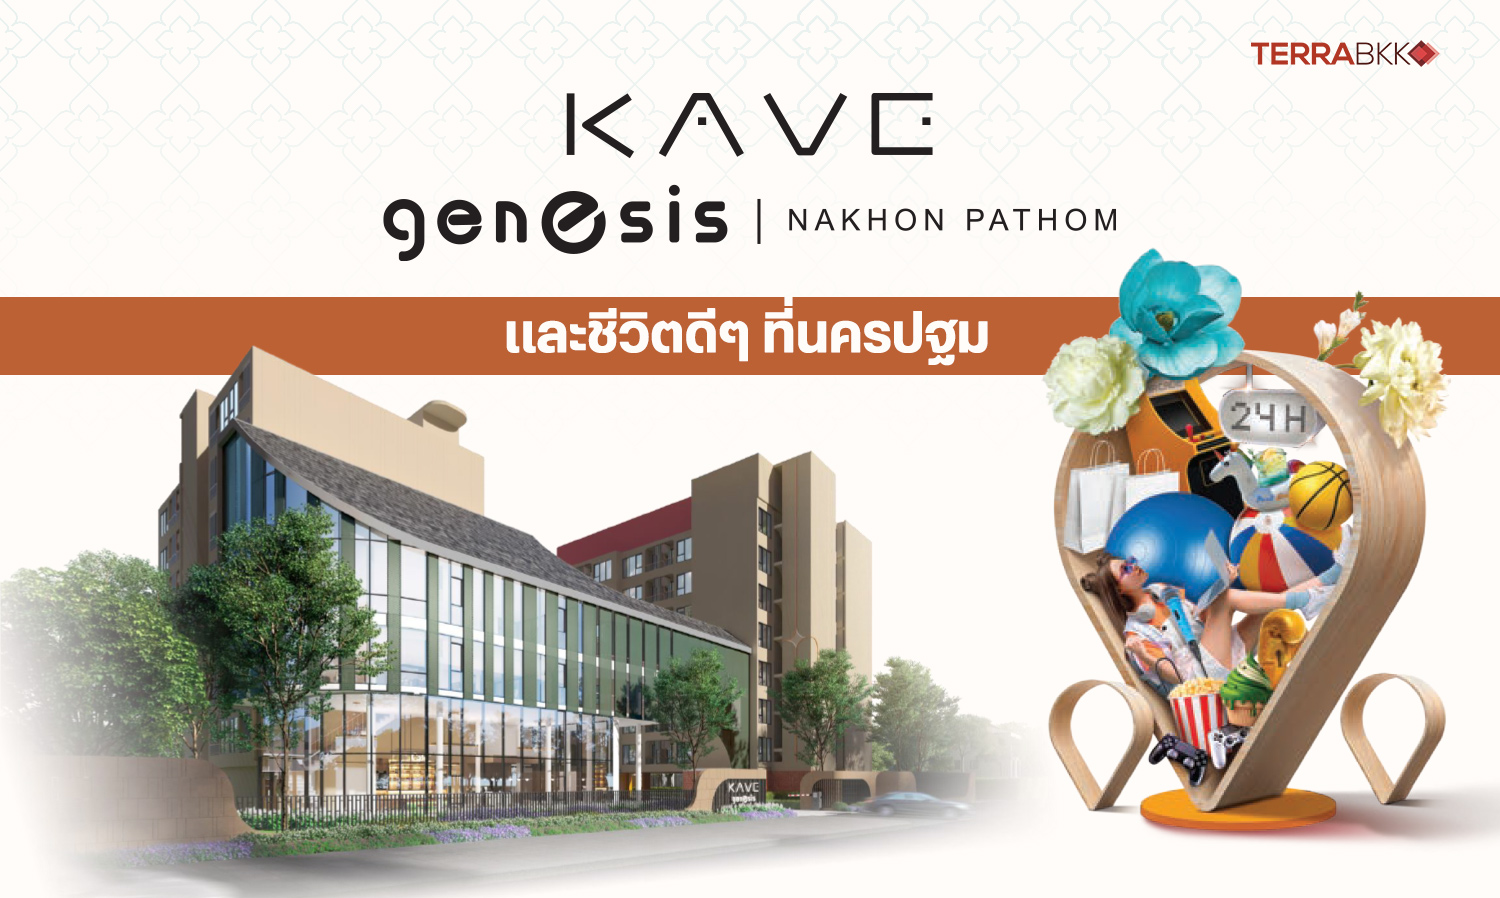 kave-genesis-และชีวิตดีๆ-ที่นครปฐม